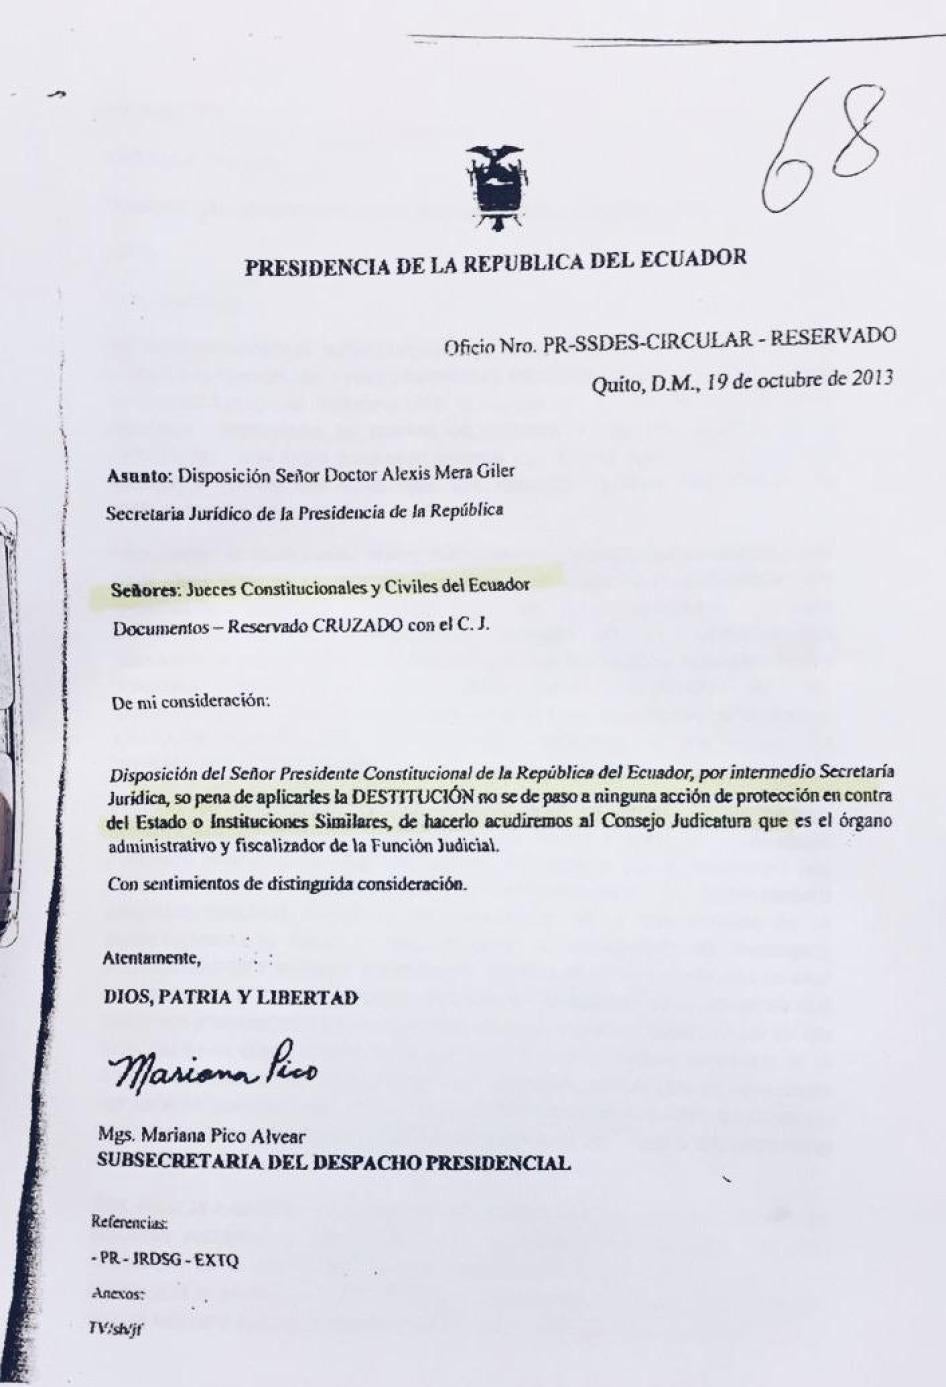 Copy of 2013 memo from the Ecuadorian Presidency.